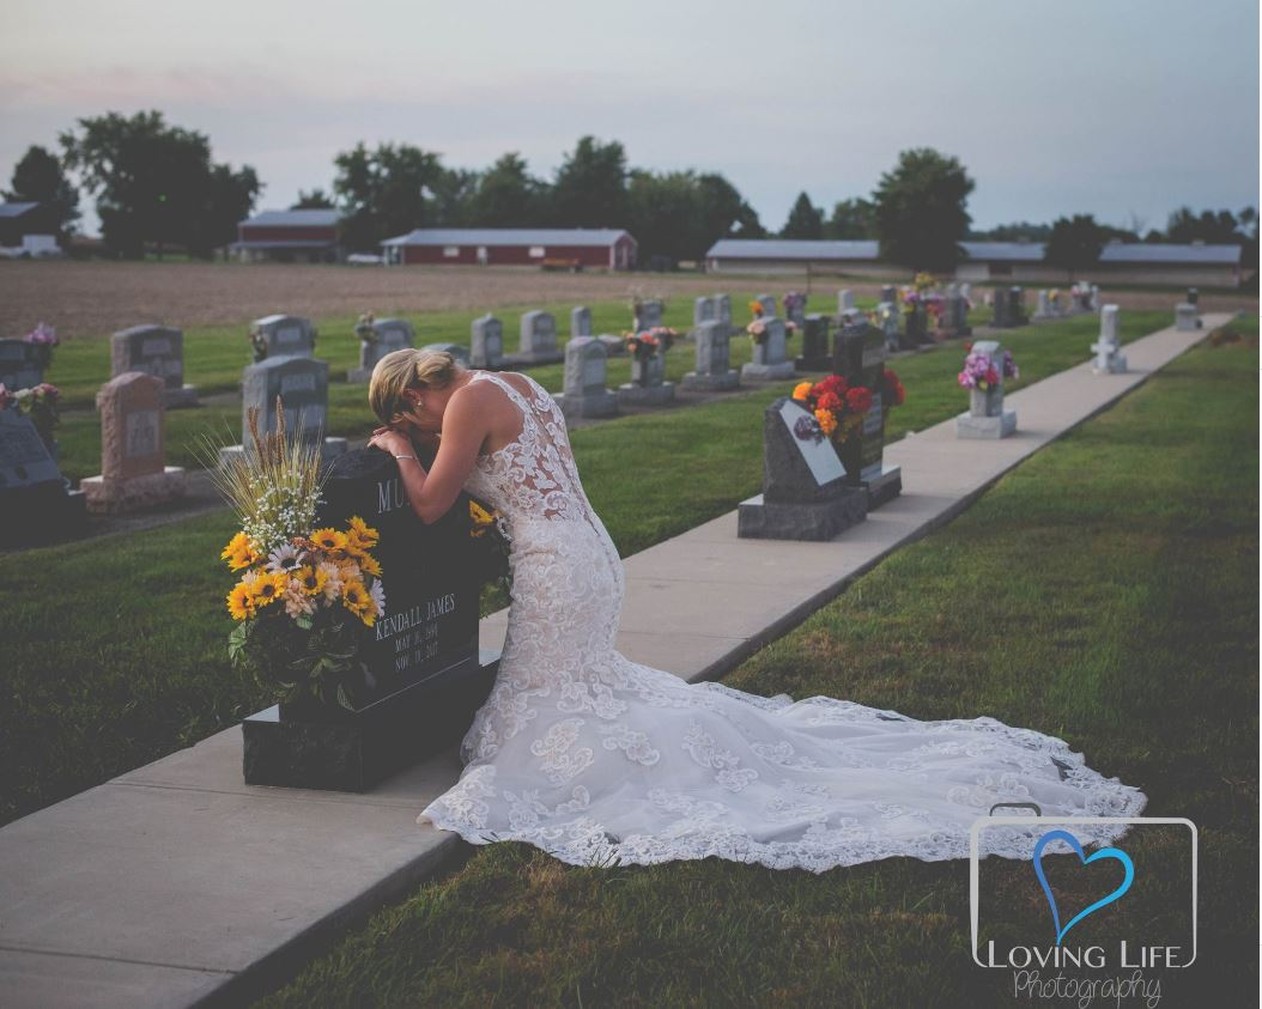 Em uma das fotos, Jessica aparece ajoelhada em frente à lápide do noivo - Foto: Foto: Reprodução/Facebook/Loving Life Photography